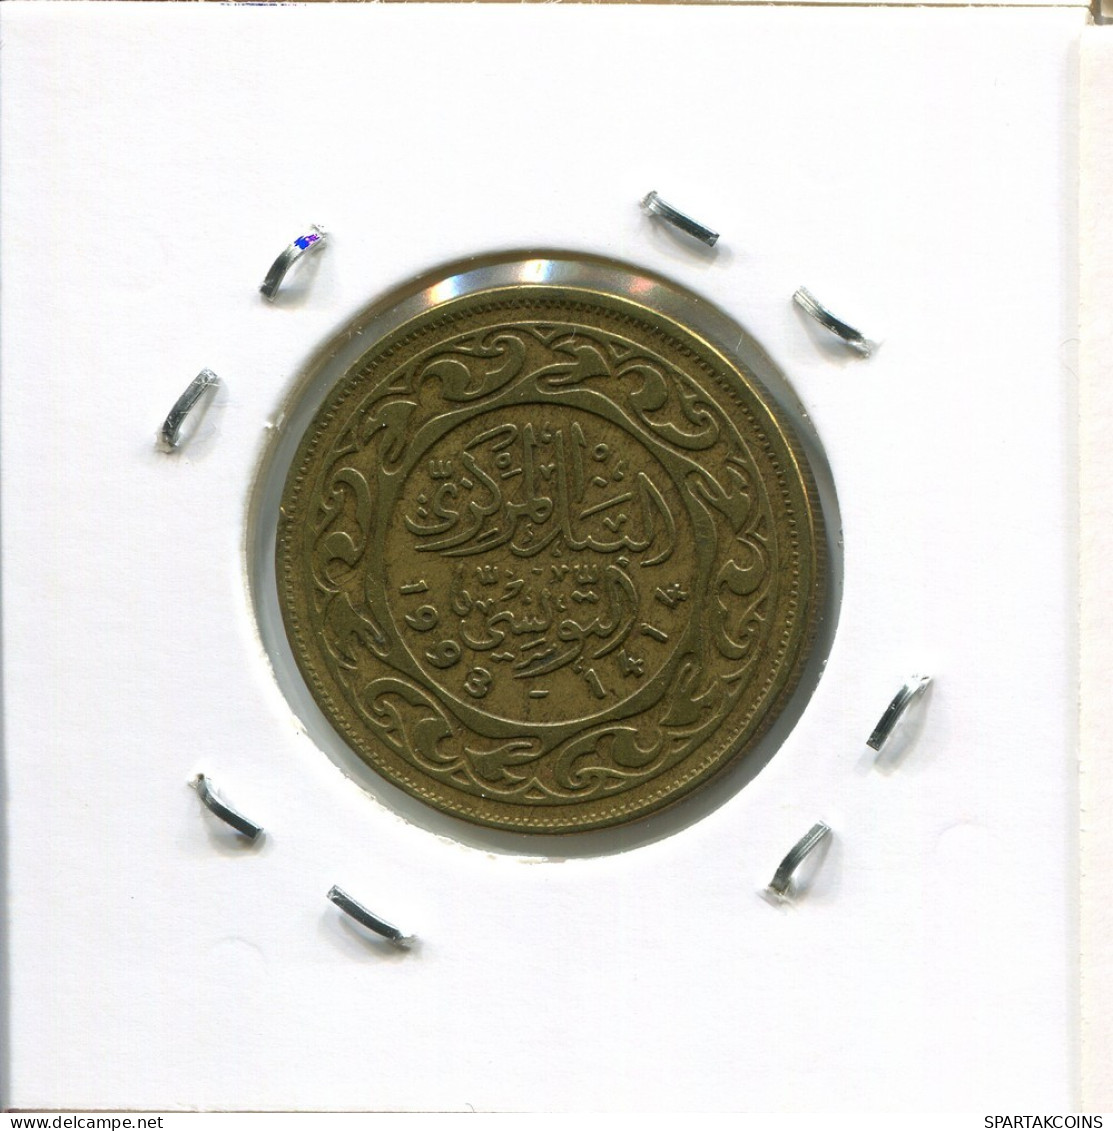 50 MILLIMES 1993 TUNISIA Coin #AP827.2.U.A - Túnez